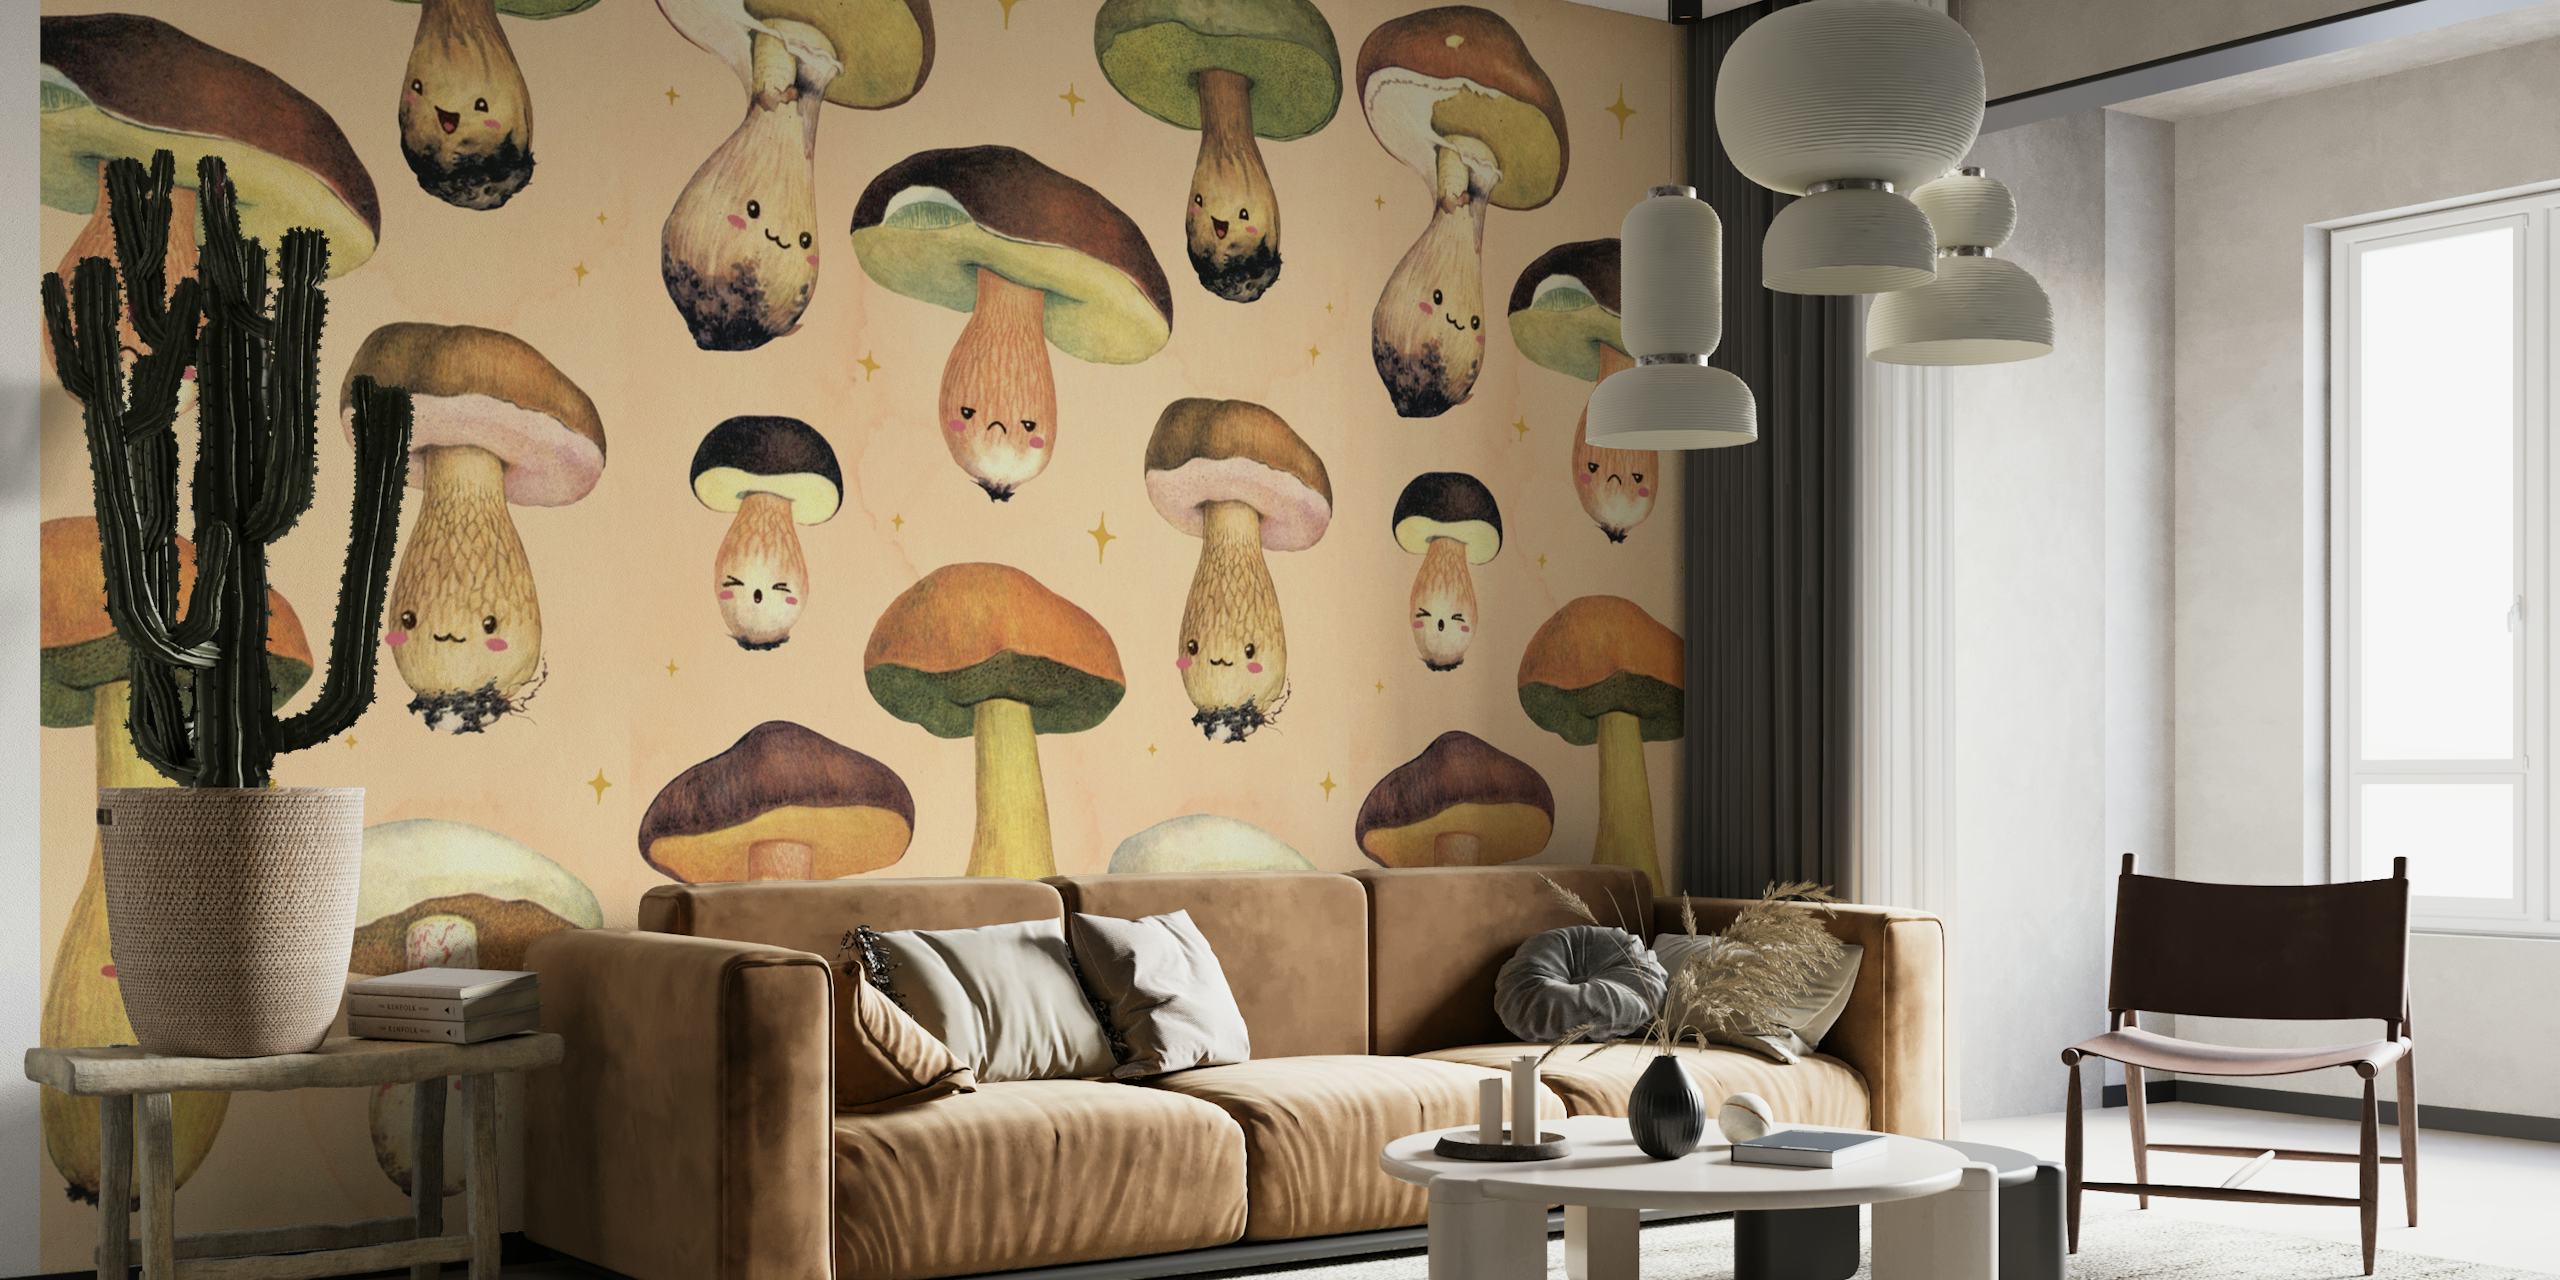 Illustreret Happy Forest Mushroom-vægmaleri med finurlige svampefigurer på en varm baggrund